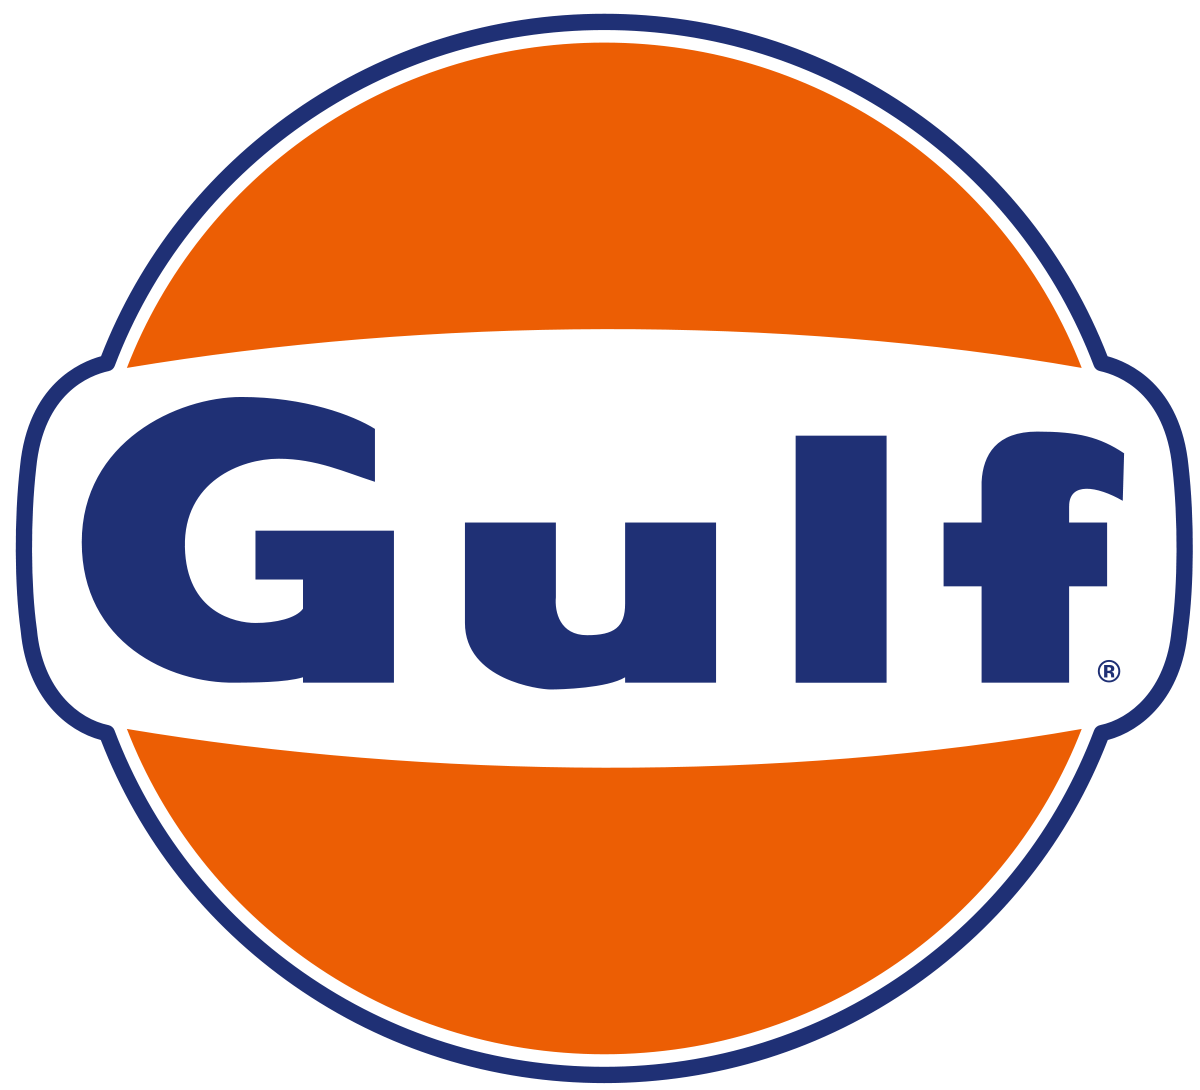 Oil Company Logo - Gulf Oil